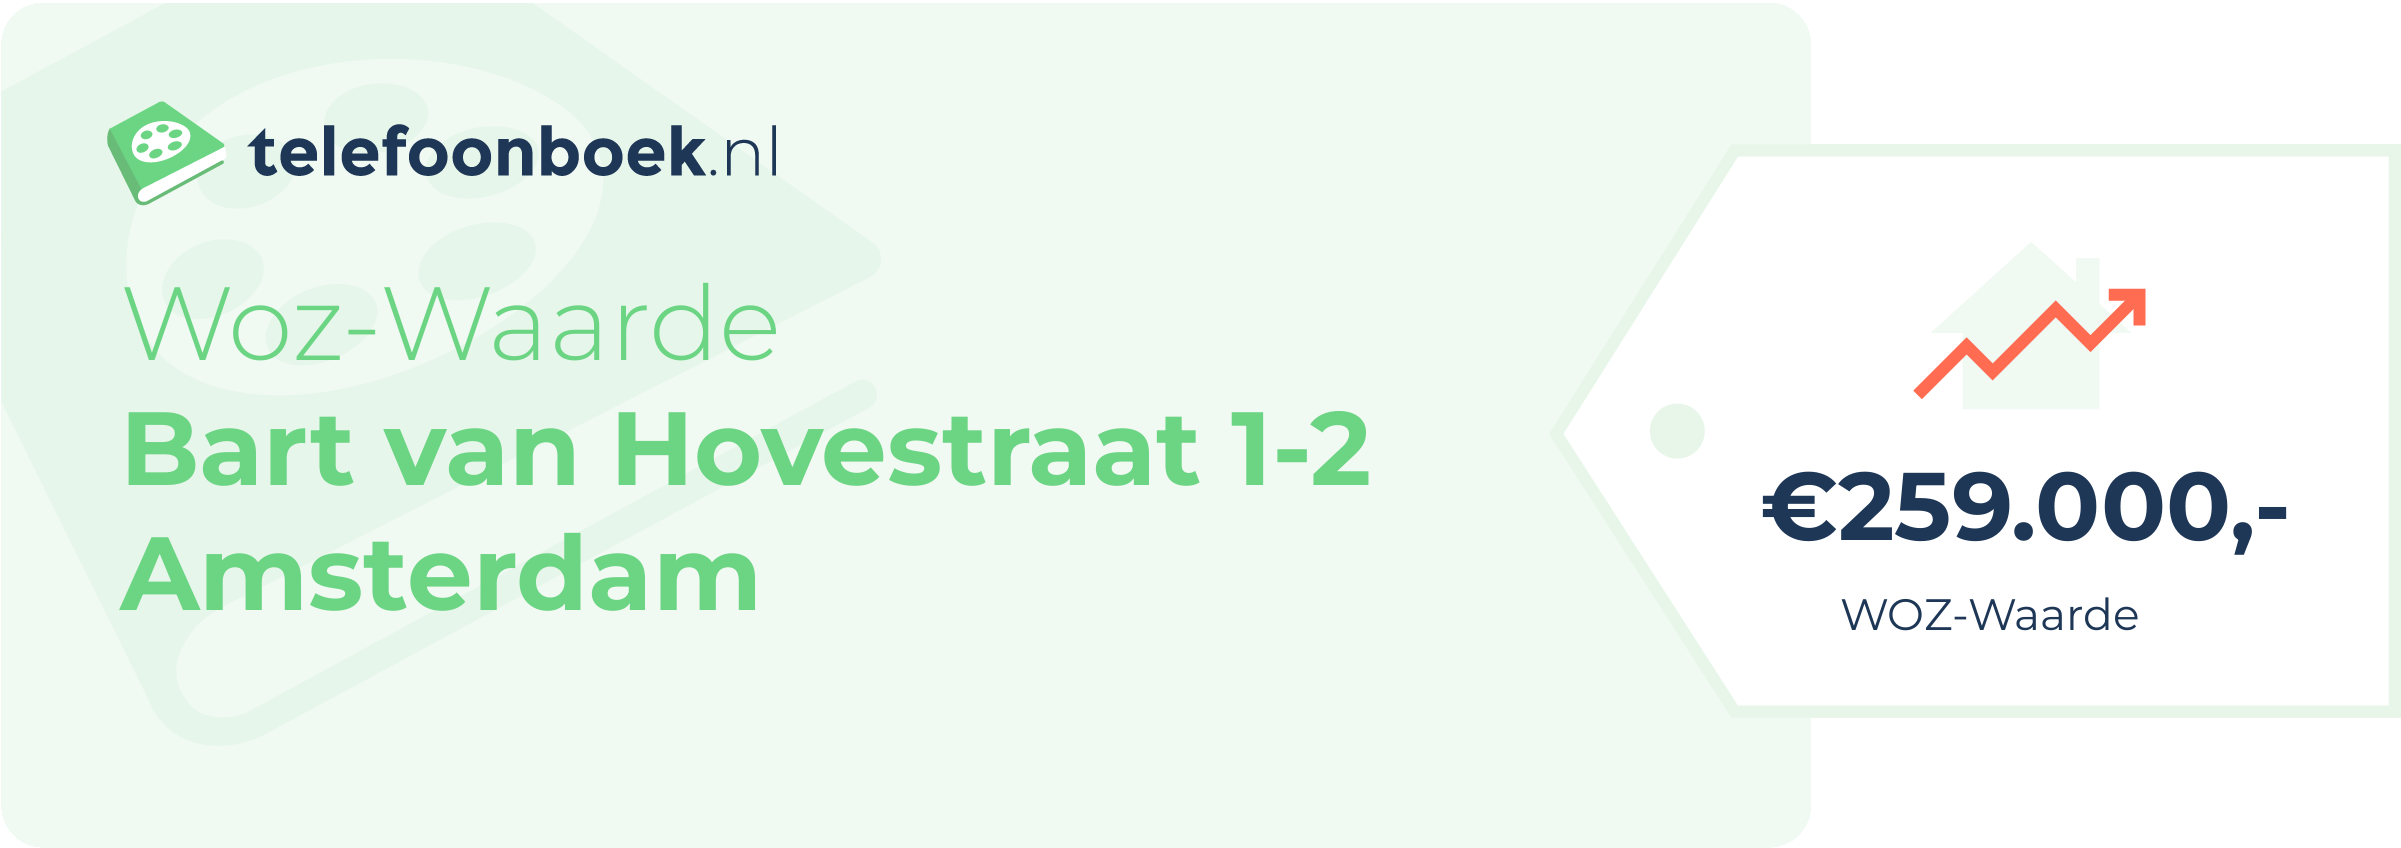 WOZ-waarde Bart Van Hovestraat 1-2 Amsterdam